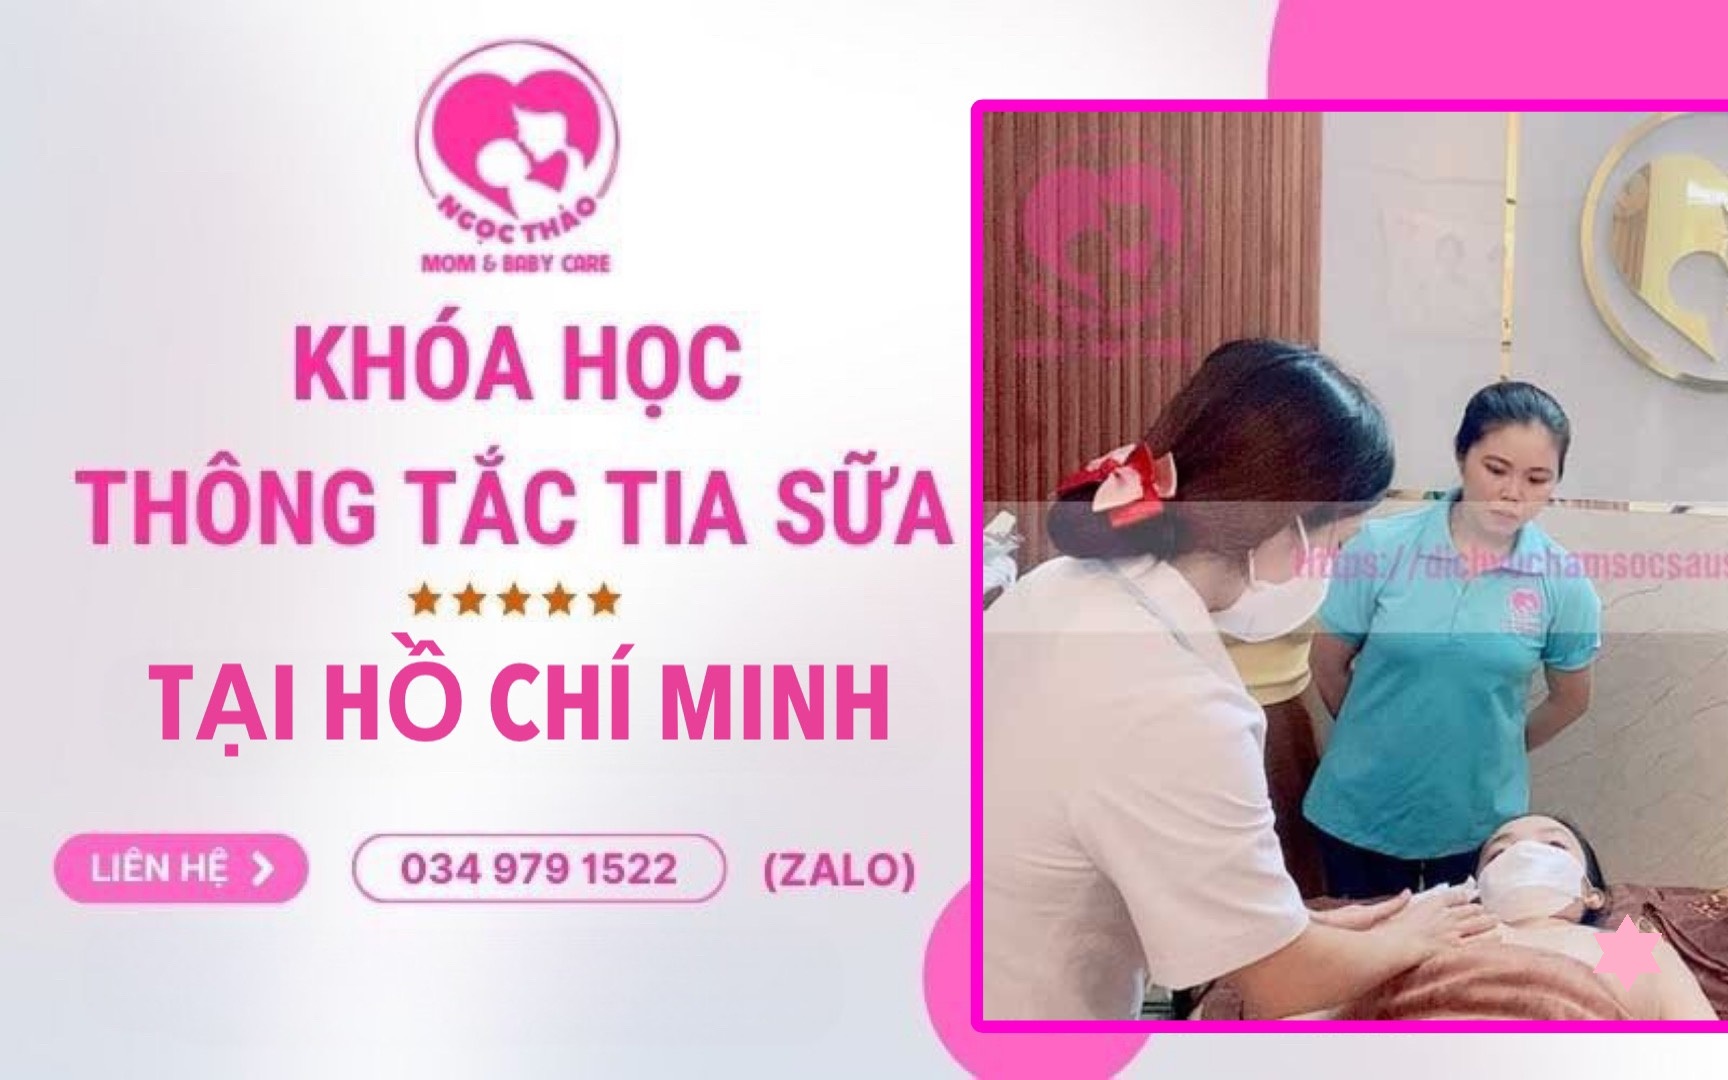 Khóa học thông tắc tia sữa tại Hồ Chí Minh